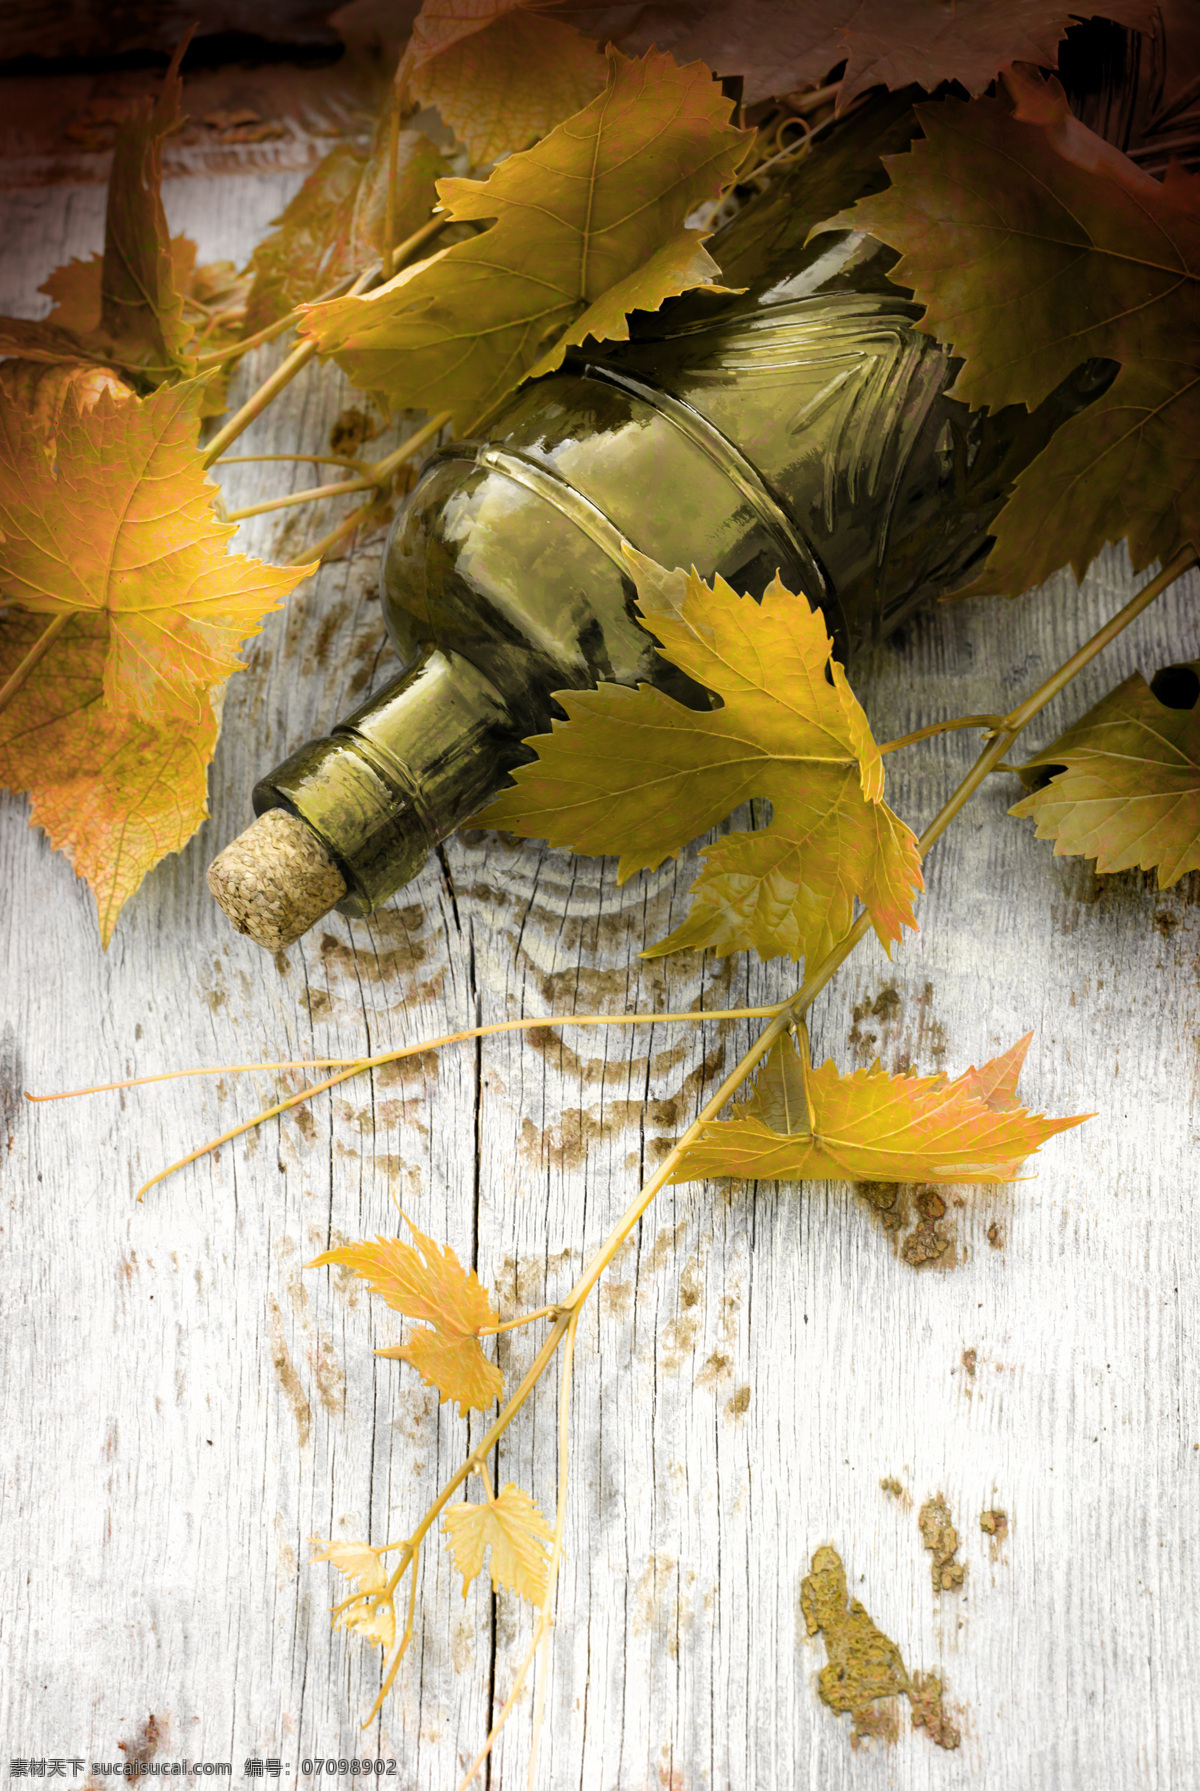 木板 上 葡萄酒 酒瓶 高档葡萄酒 木板背景 木纹背景 葡萄叶 葡萄藤 酒类图片 餐饮美食